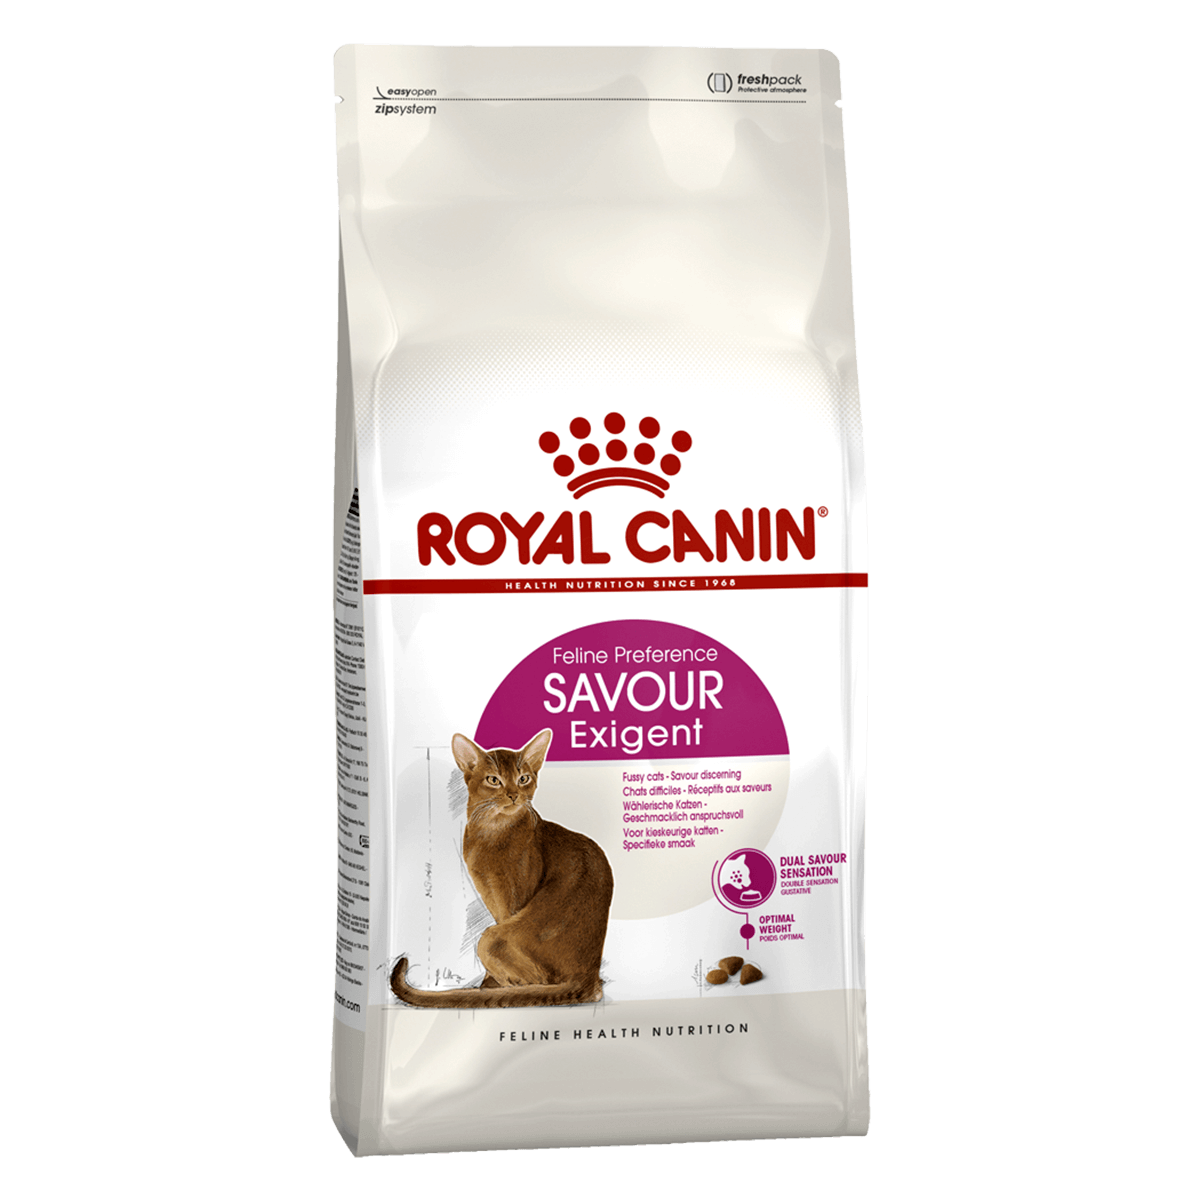 Royal Canin Exigent Savour Sensation, 2 кг - корм Роял Канин для привередливых кошек